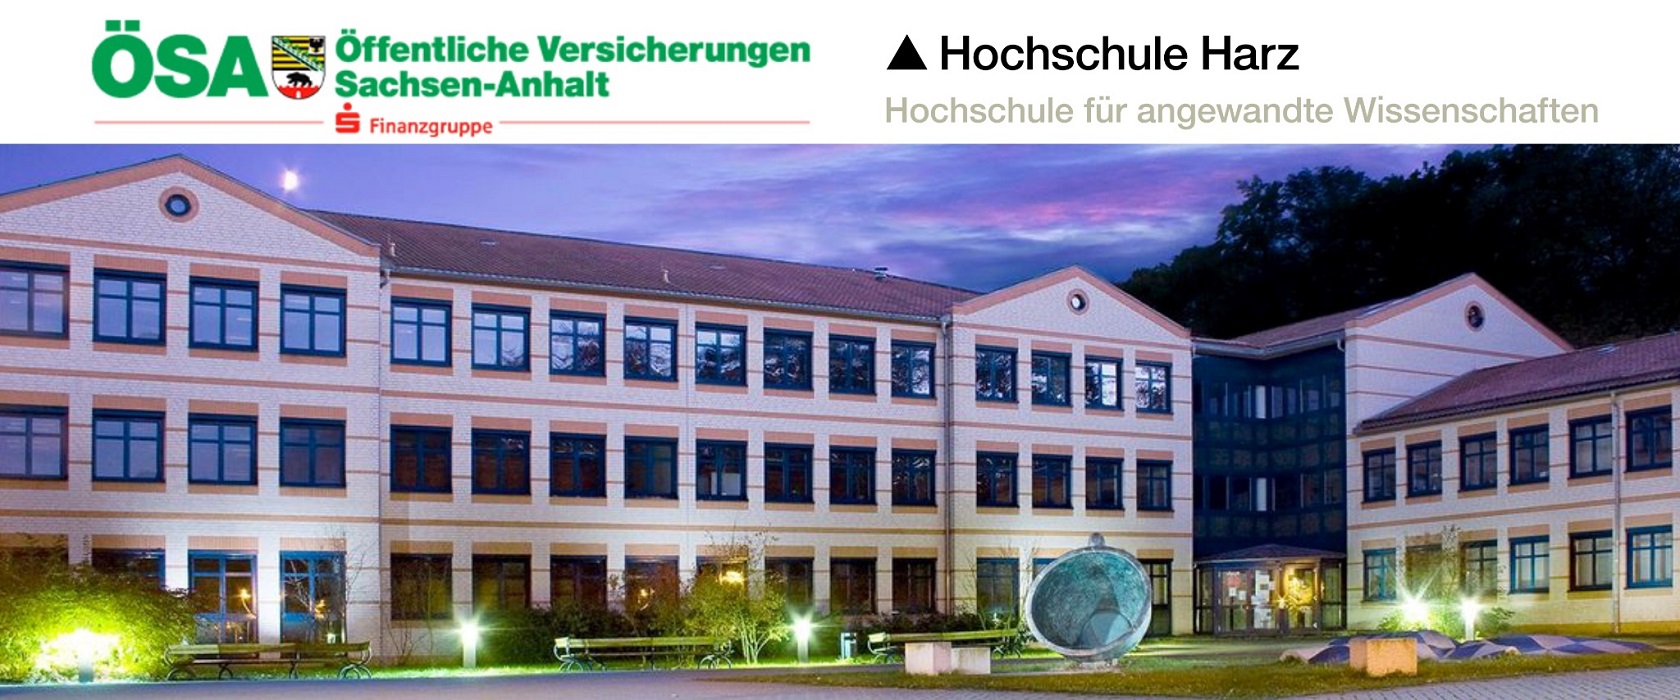 Bühnenbild mit dem Gebäude der Hochschule Harz sowie dem Logo der ÖSA